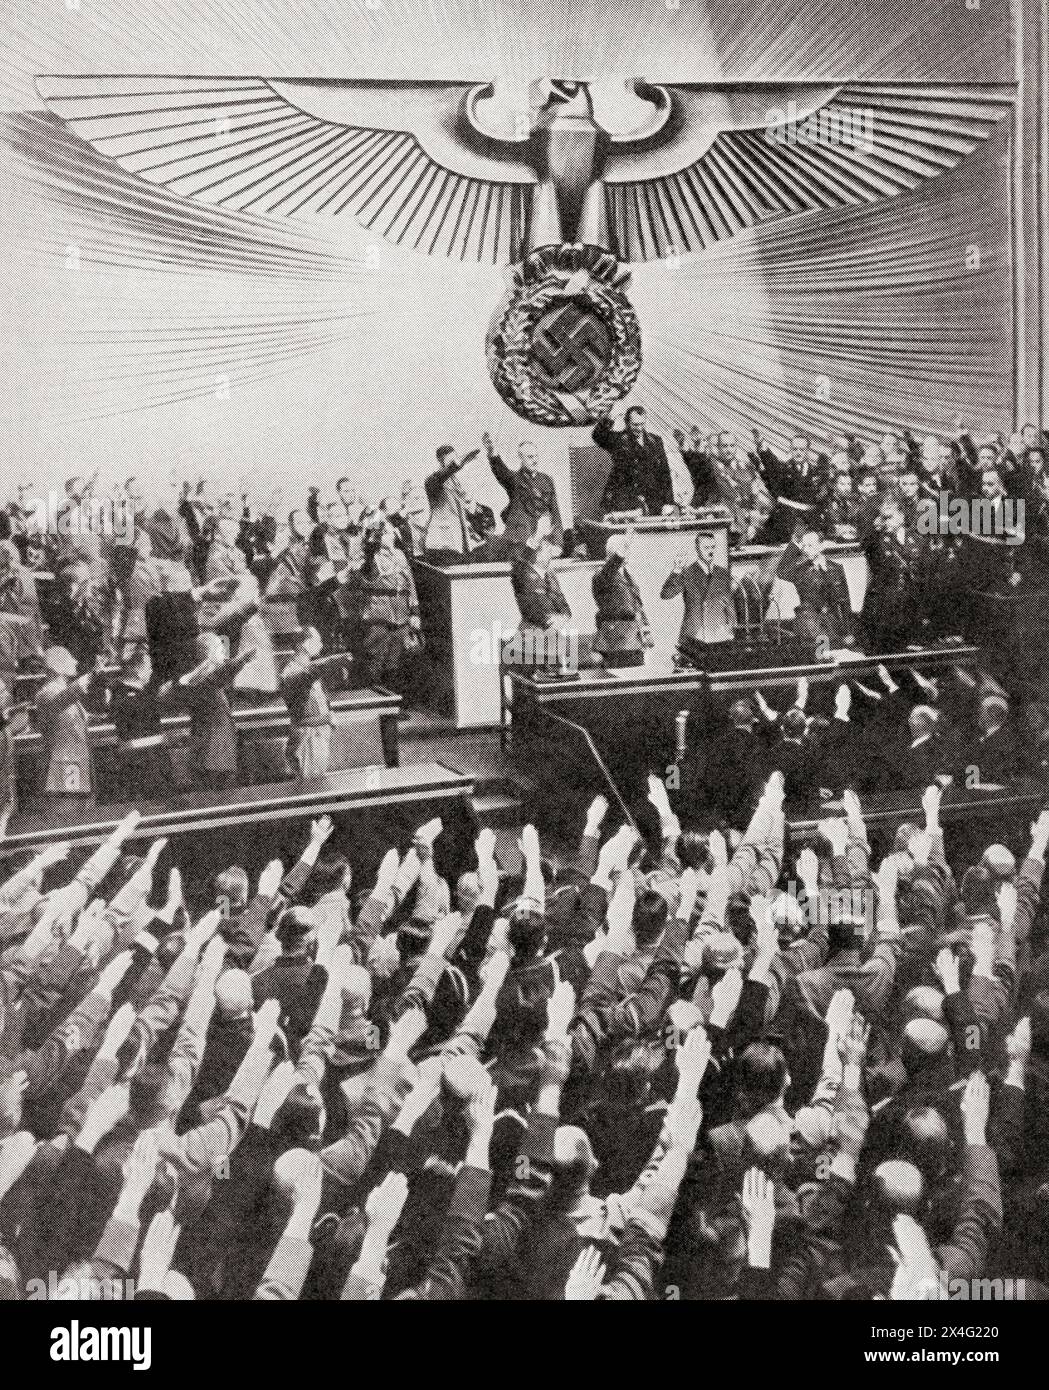 Hitler prononçant son discours de « paix » au Reichstag, le 6 octobre 1939. Adolf Hitler, 1889 – 1945. Homme politique allemand, démagogue, révolutionnaire panallemand, chef du parti nazi, chancelier d'Allemagne et Führer de l'Allemagne nazie de 1934 à 1945. De la Guerre en images, première année. Banque D'Images